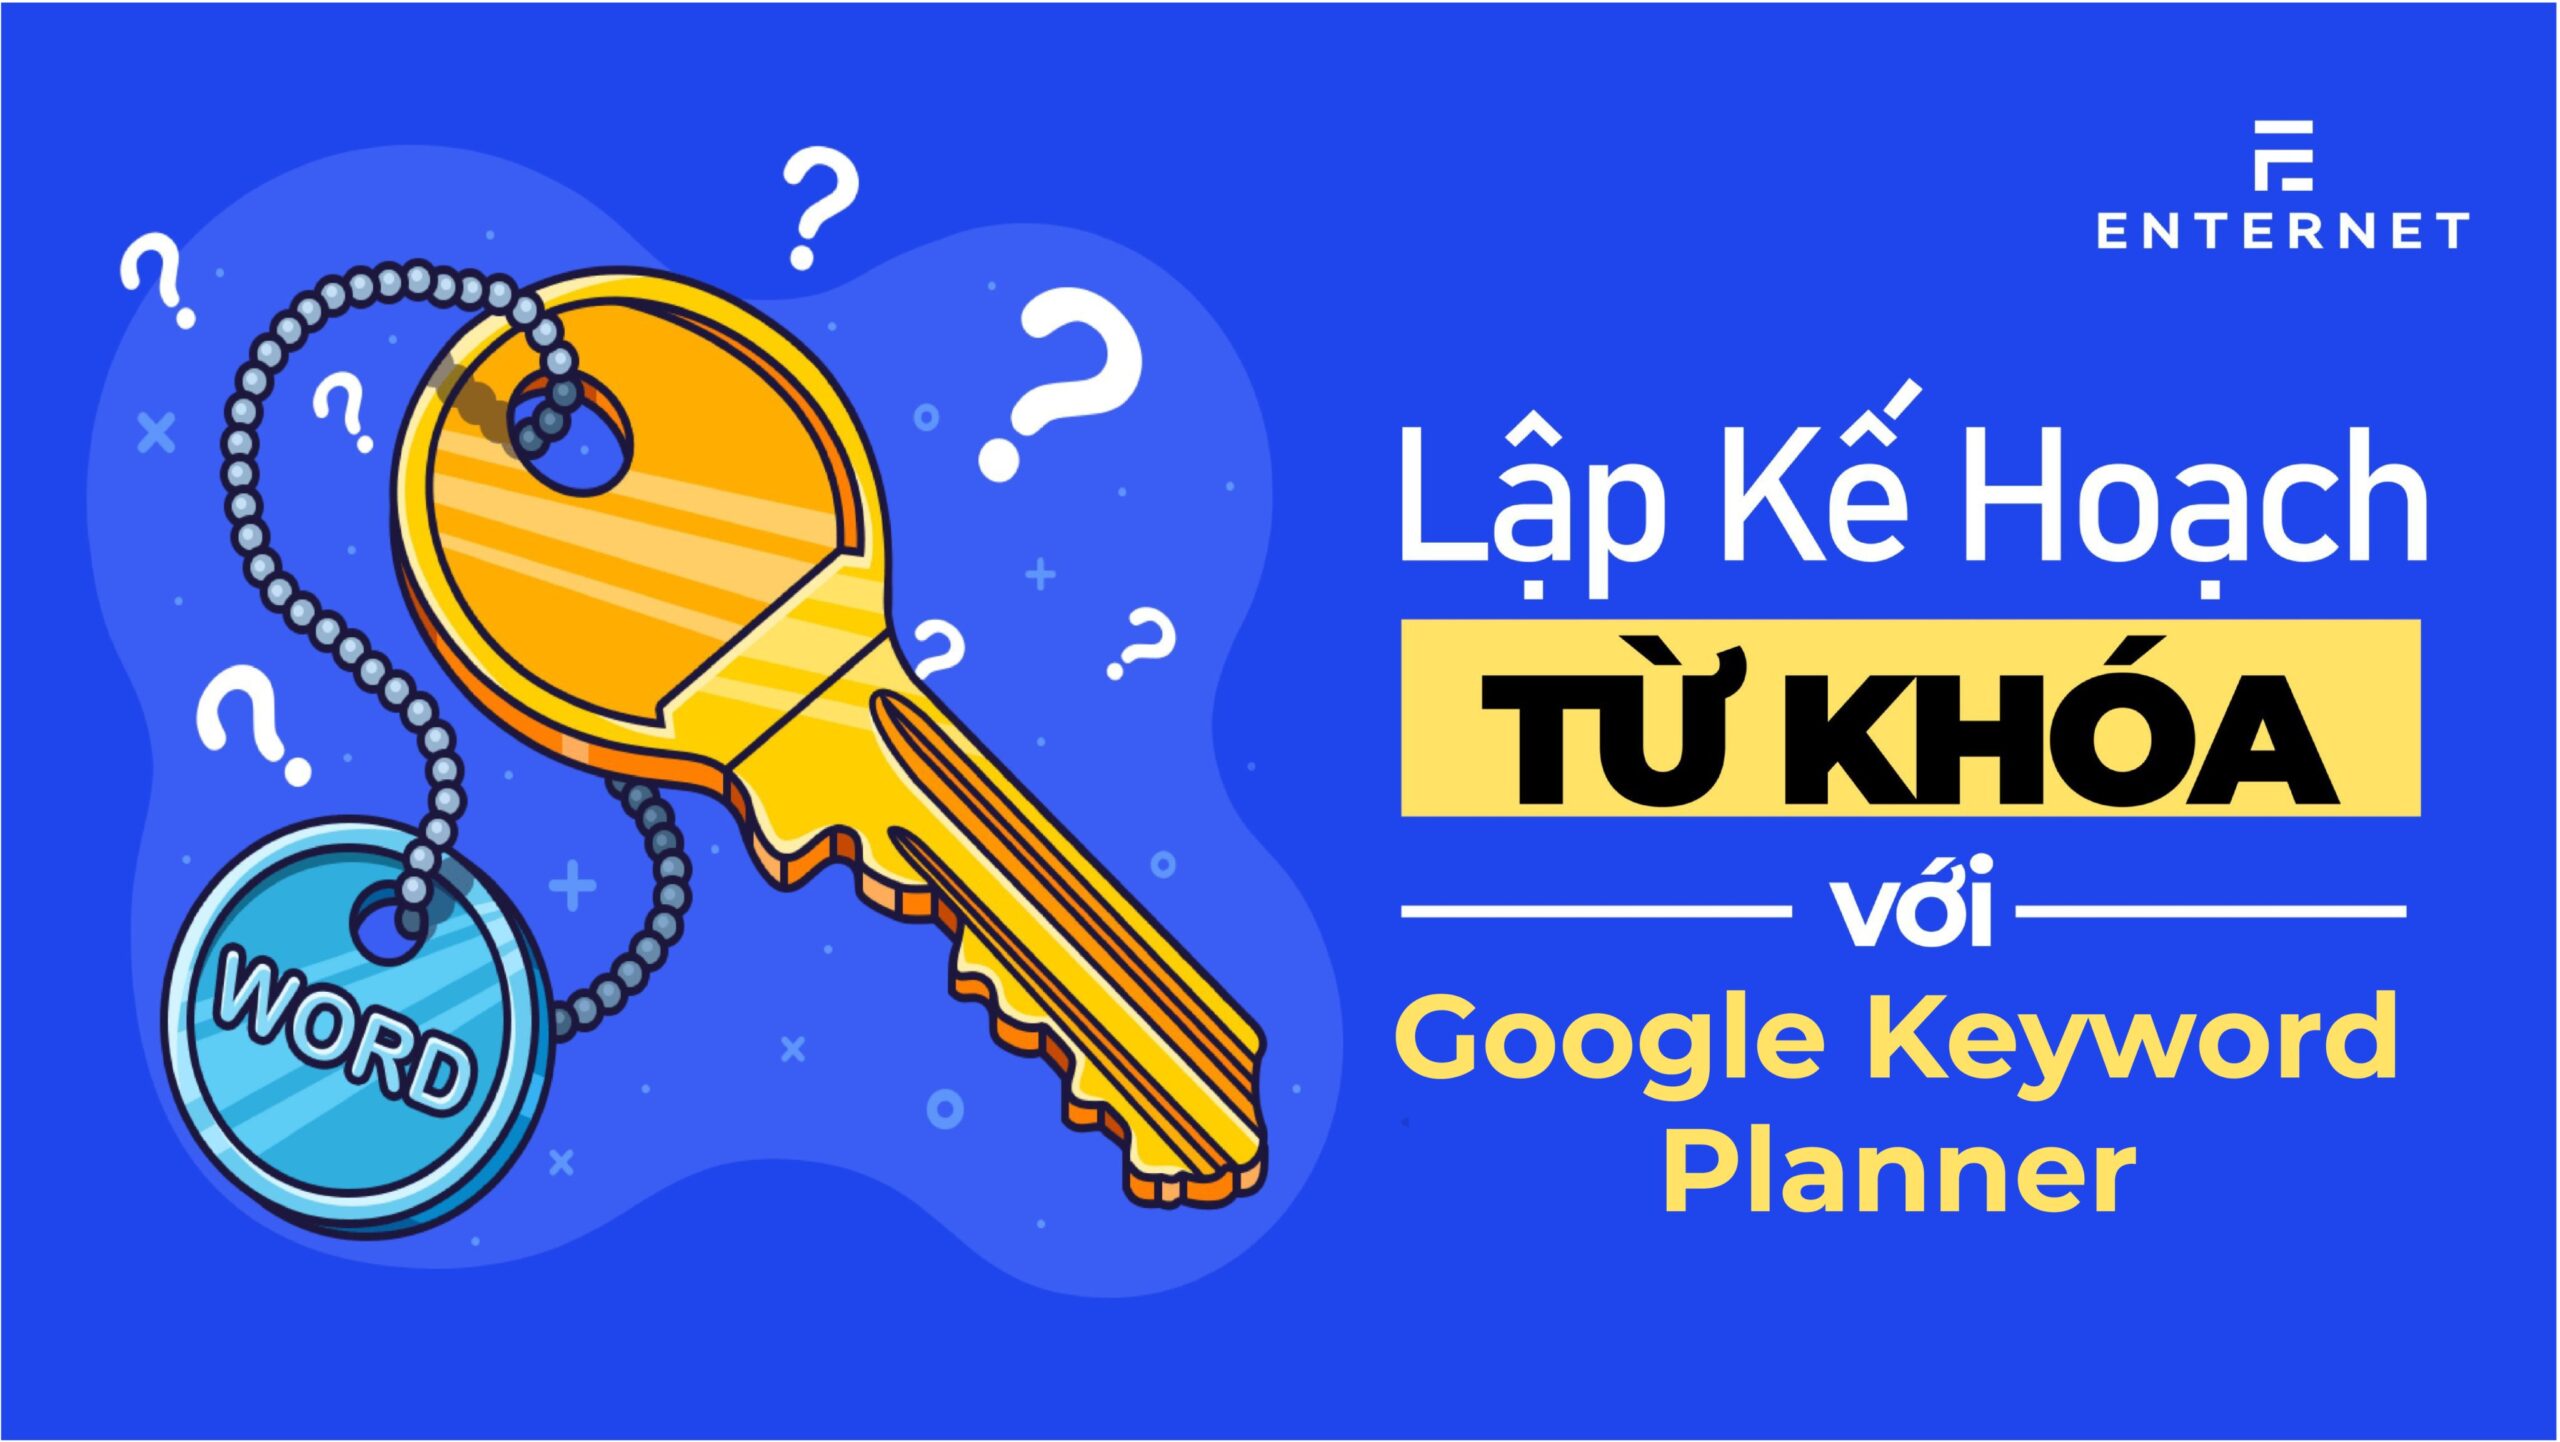 Lập kế hoạch từ khóa với Google Keyword Planner